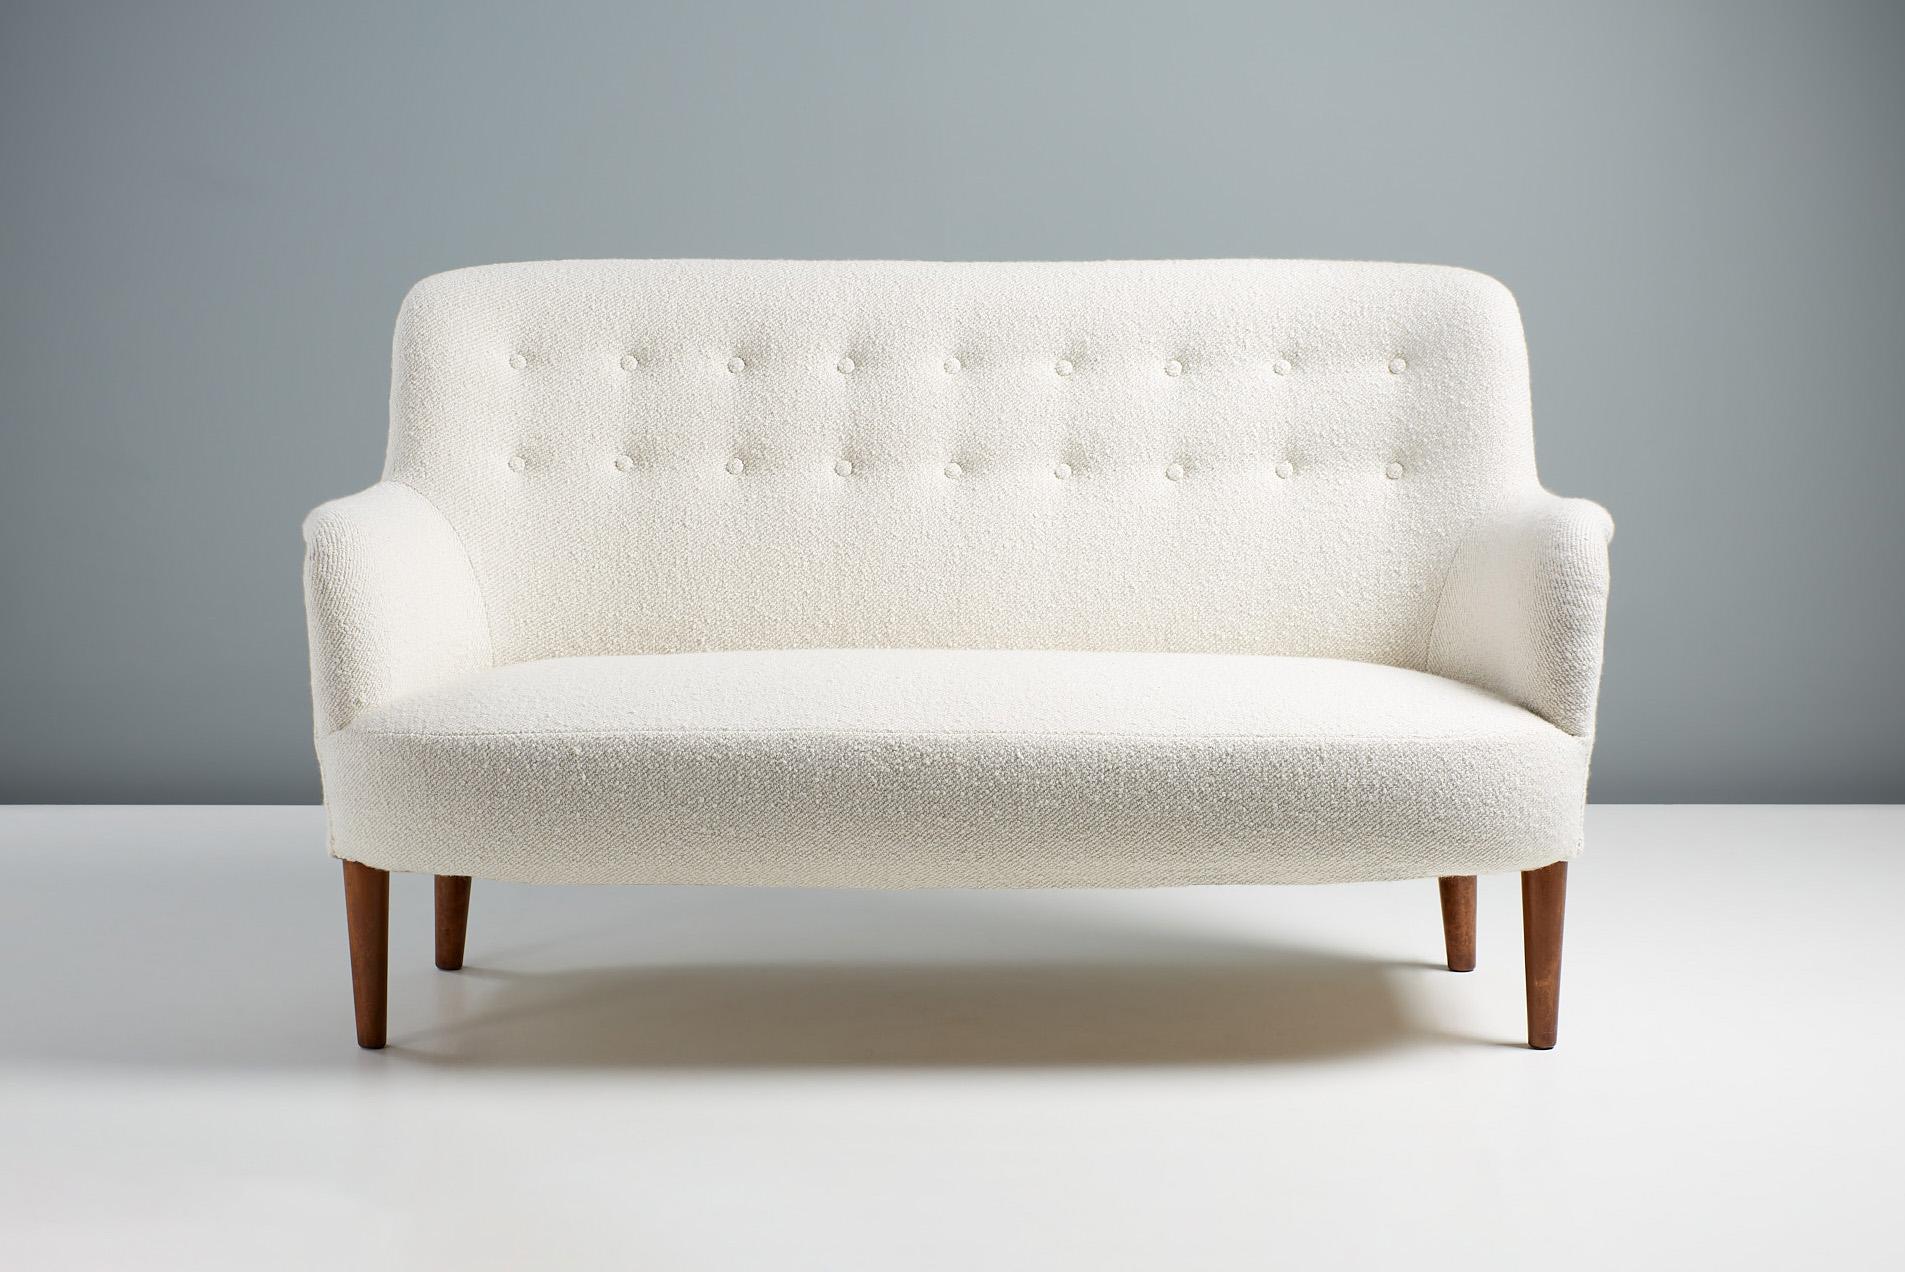 Carl Malmsten - Canapé, vers 1950.

Petit canapé conçu dans les années 1950 par le maître-designer suédois Carl Malmsten et produit par sa propre entreprise en Suède. Le canapé a été restauré et reverni avec des pieds en bois d'orme huilé. Il a